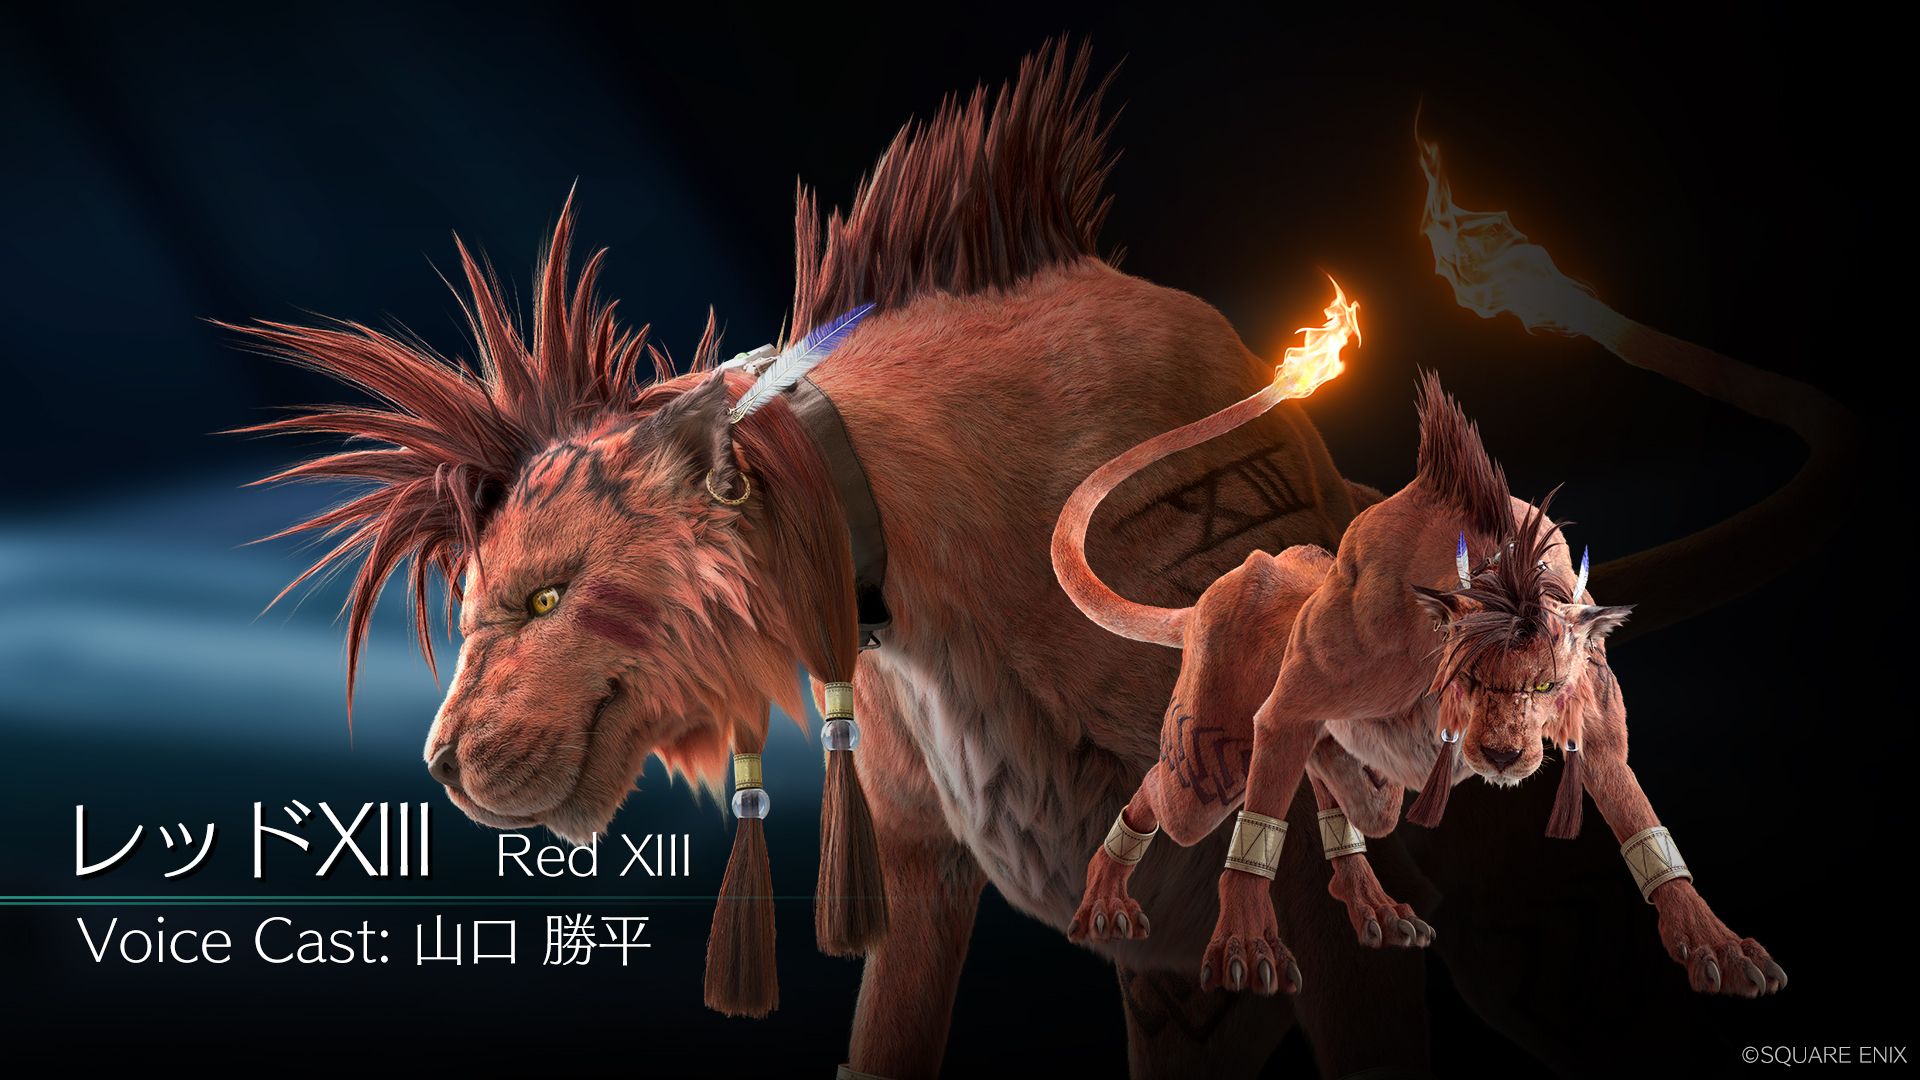 Blot Detektiv spiralformet Final Fantasy VII Remake Reveals New Red XIII Visual